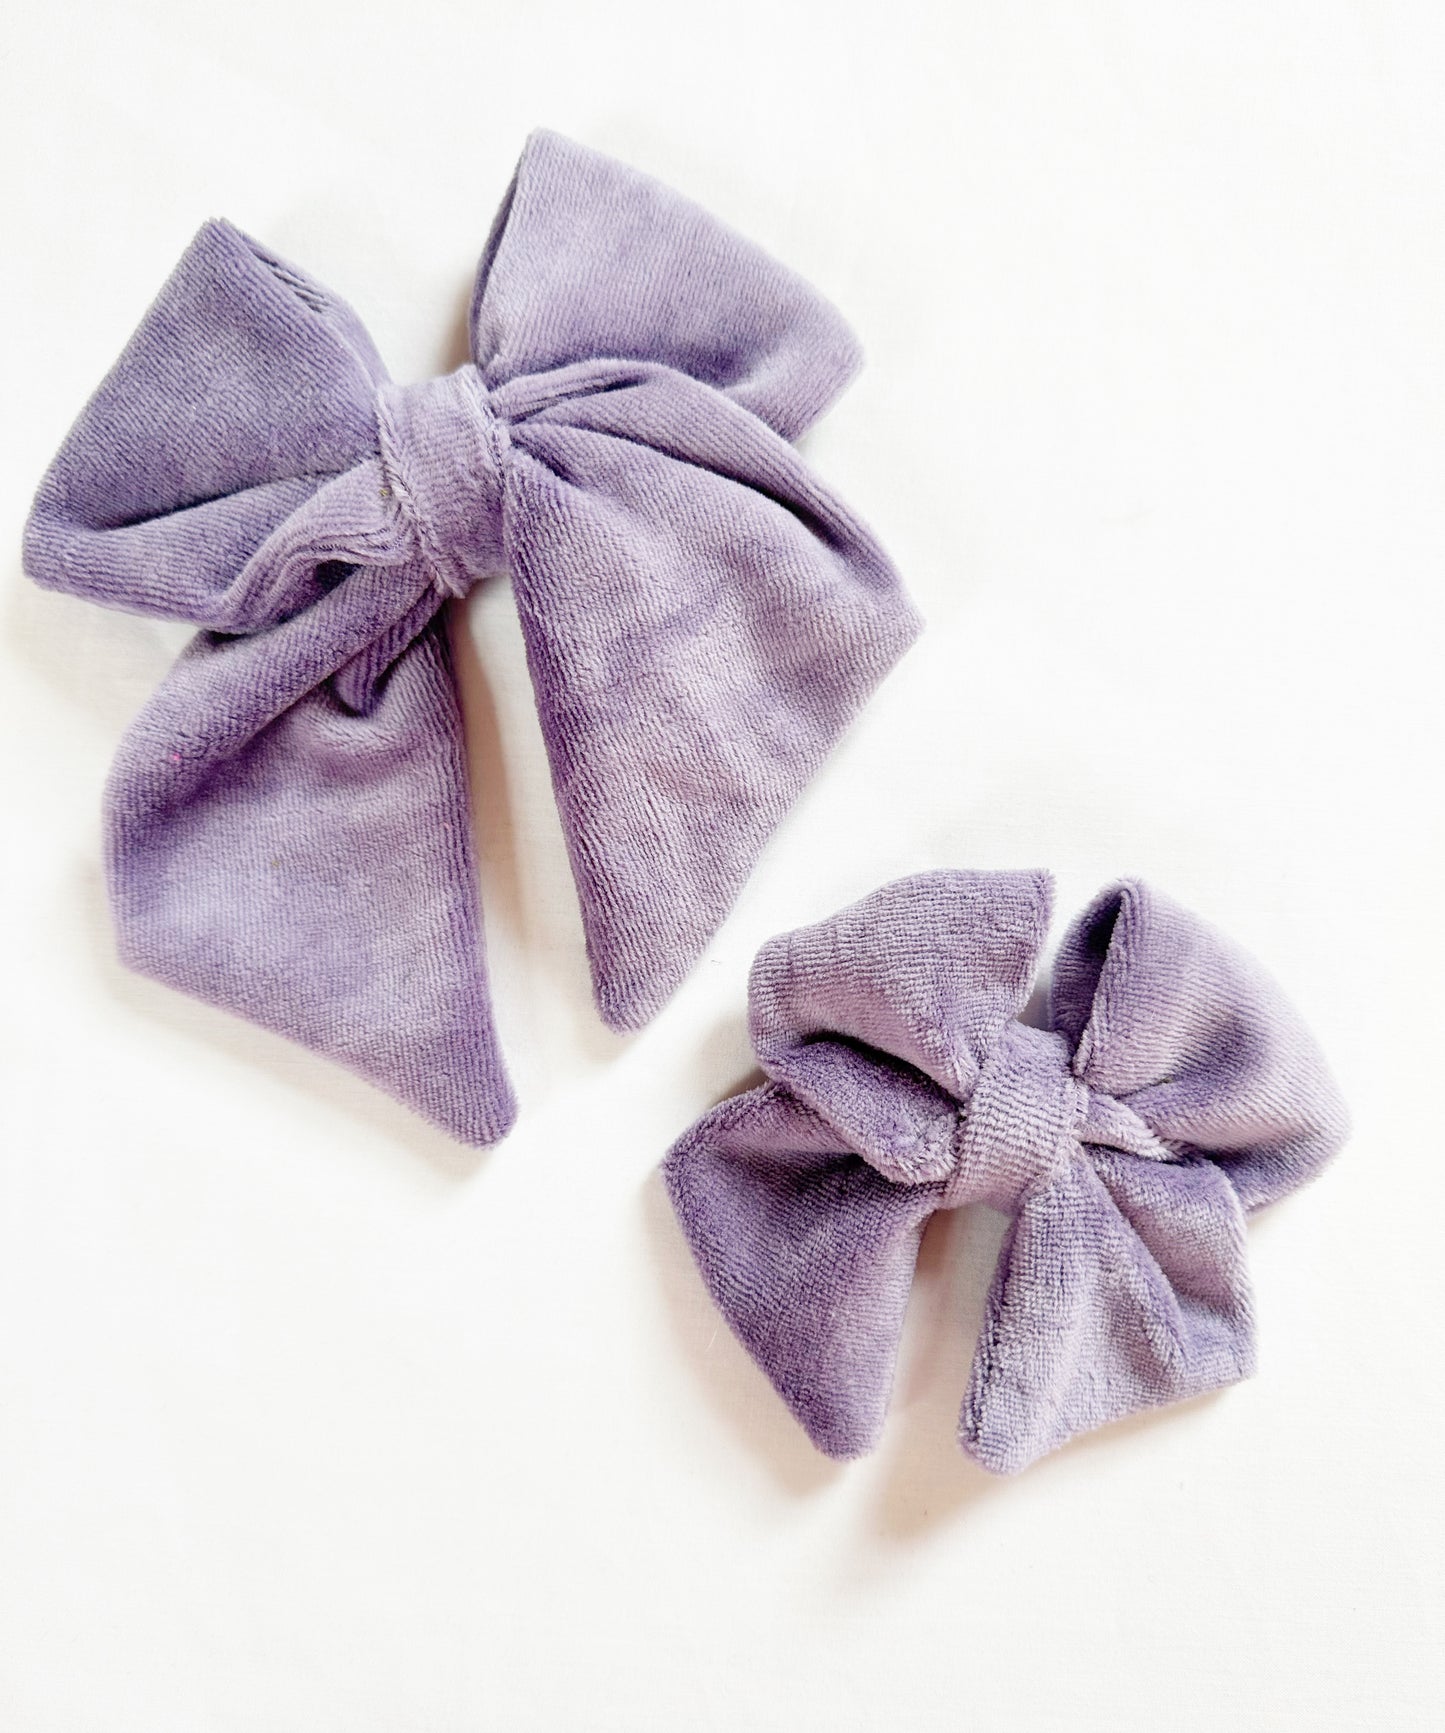 Hair Bow gift set in lavender velour